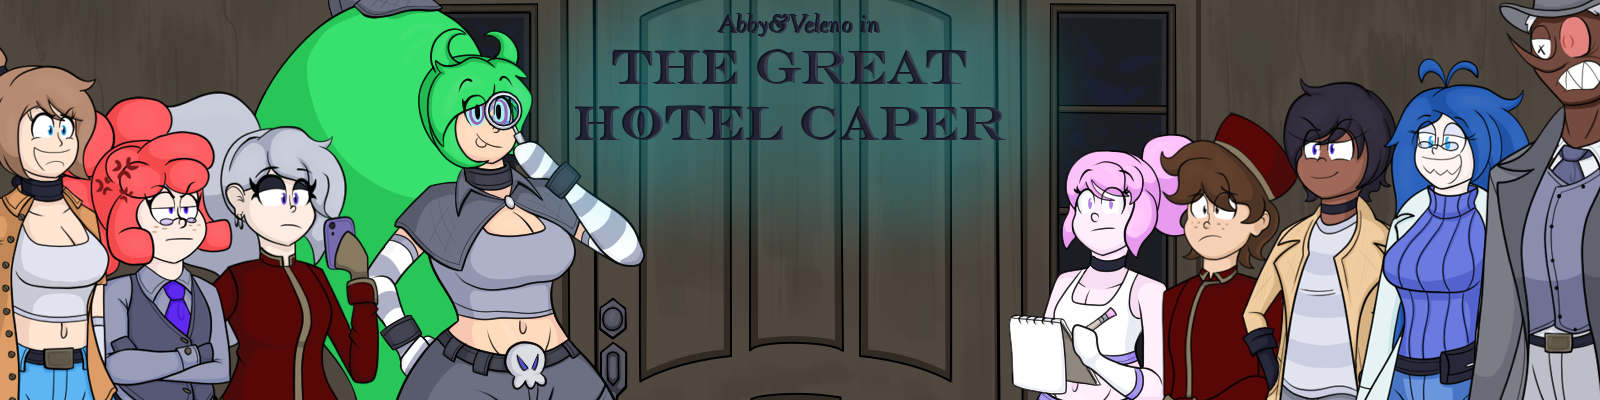 Abby & Veleno in The Great Hotel Caper